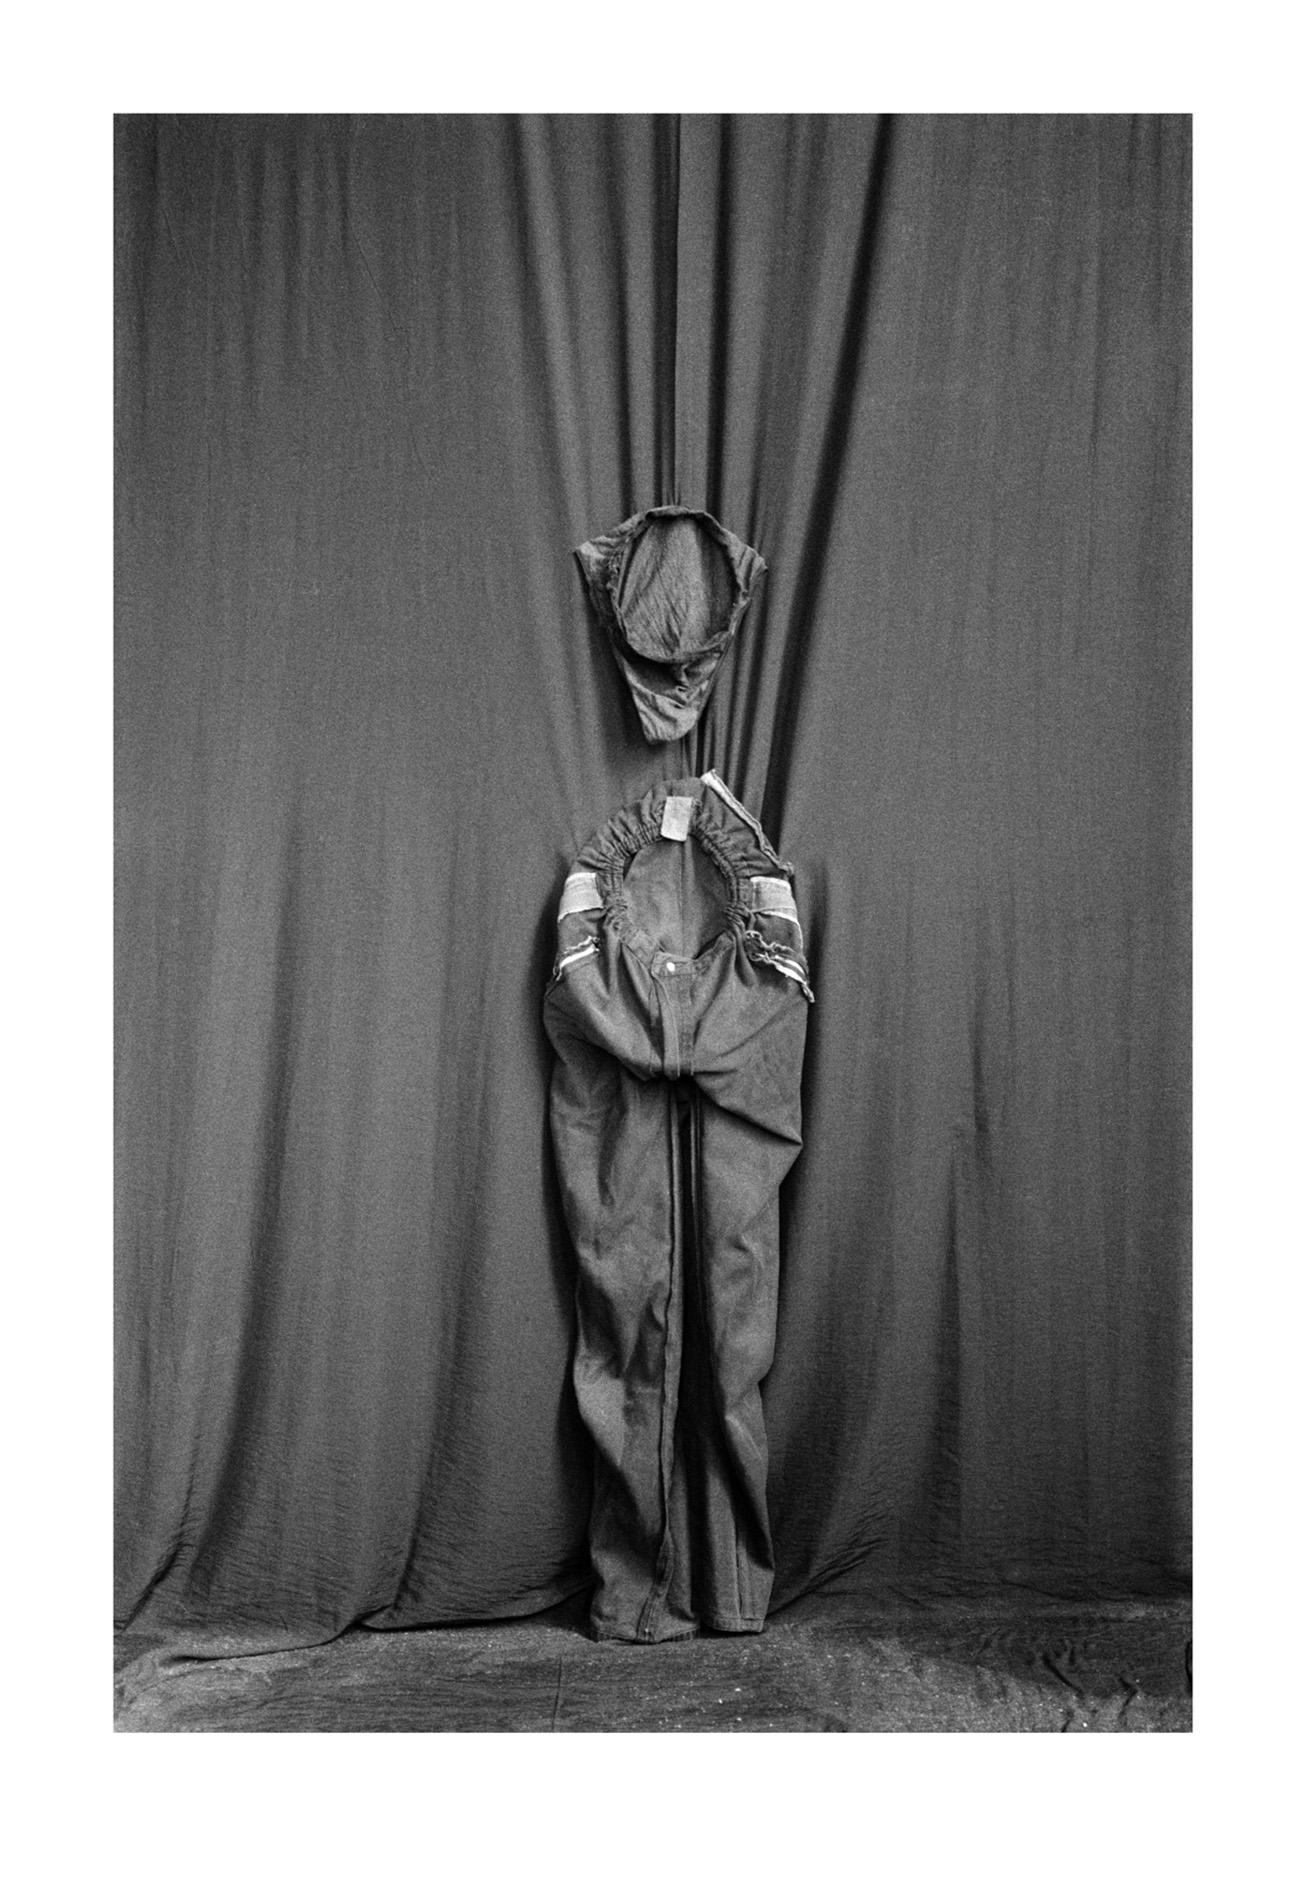 Bragas y pantalon (serie: el ombligo del mundo, doc#4), (ed.3), 2008, fotografía, 175 x 120 cm.